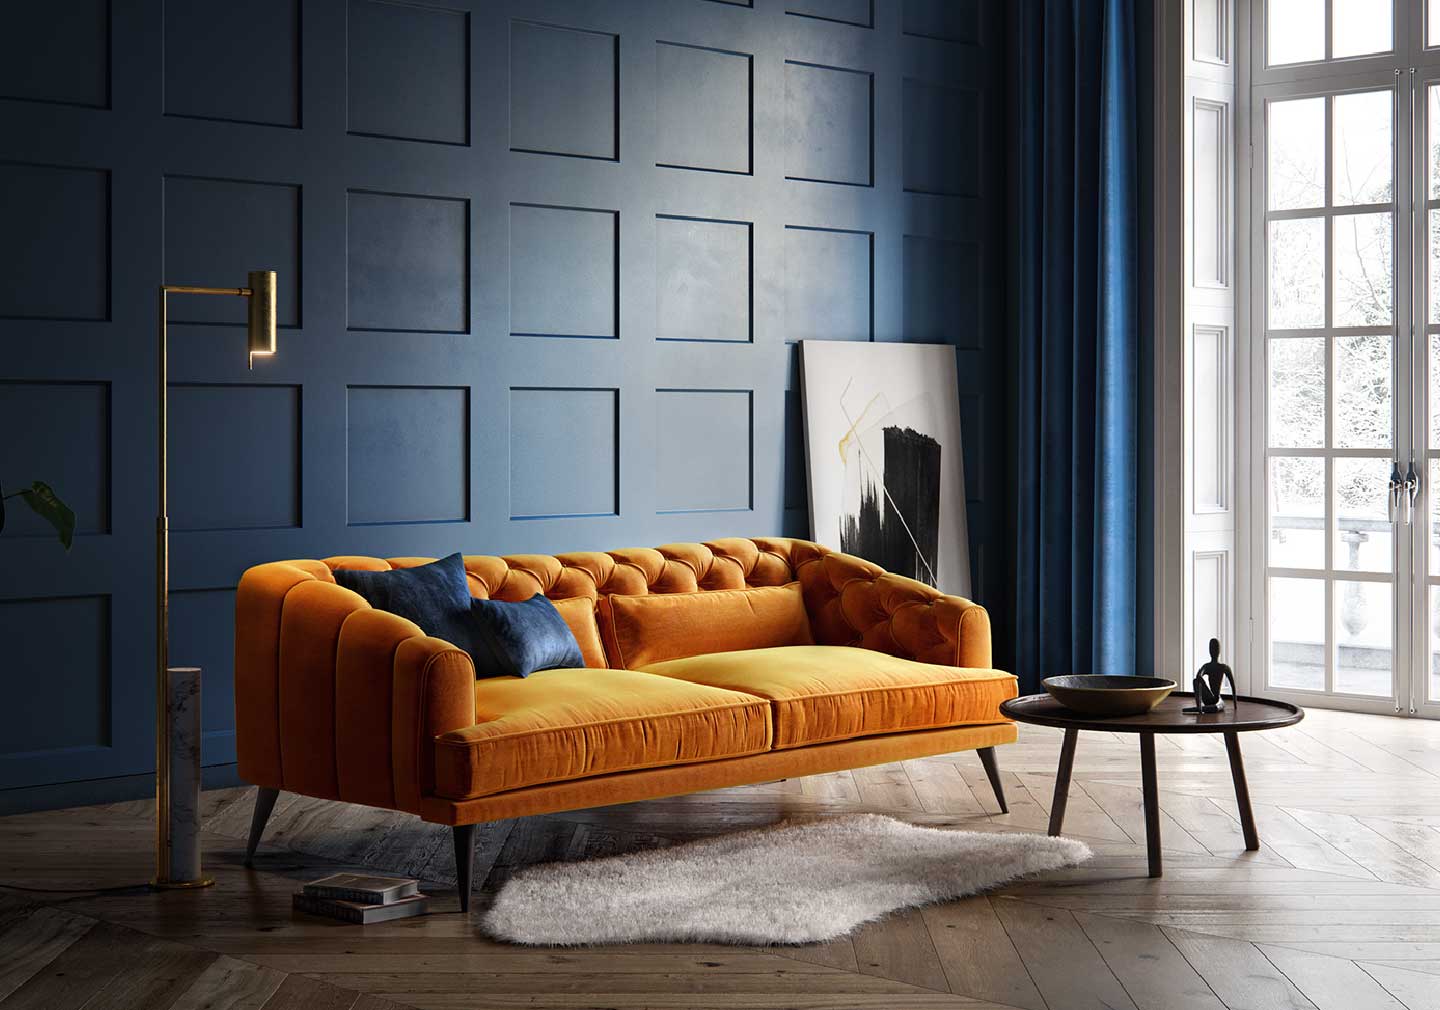 Modern contemporary living room interior design with sofa